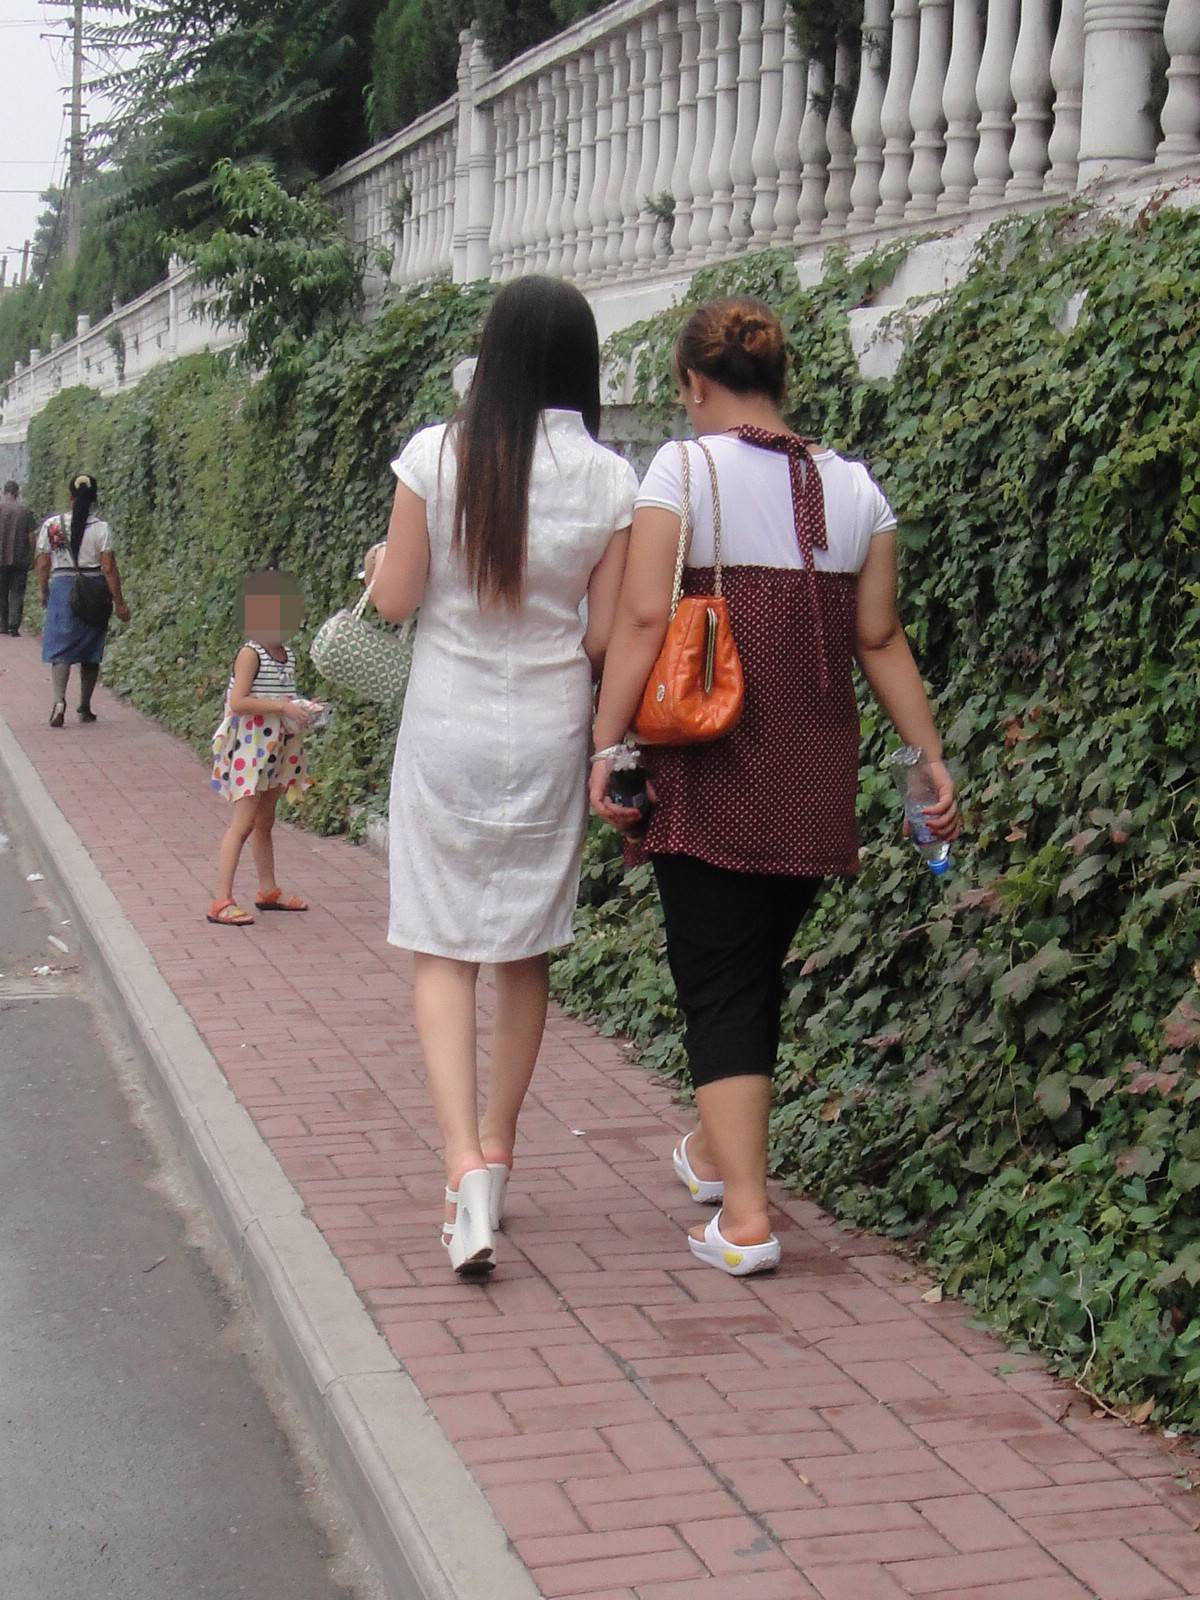 [户外街拍] 2013.09.08 白裙白超高凉托妇人